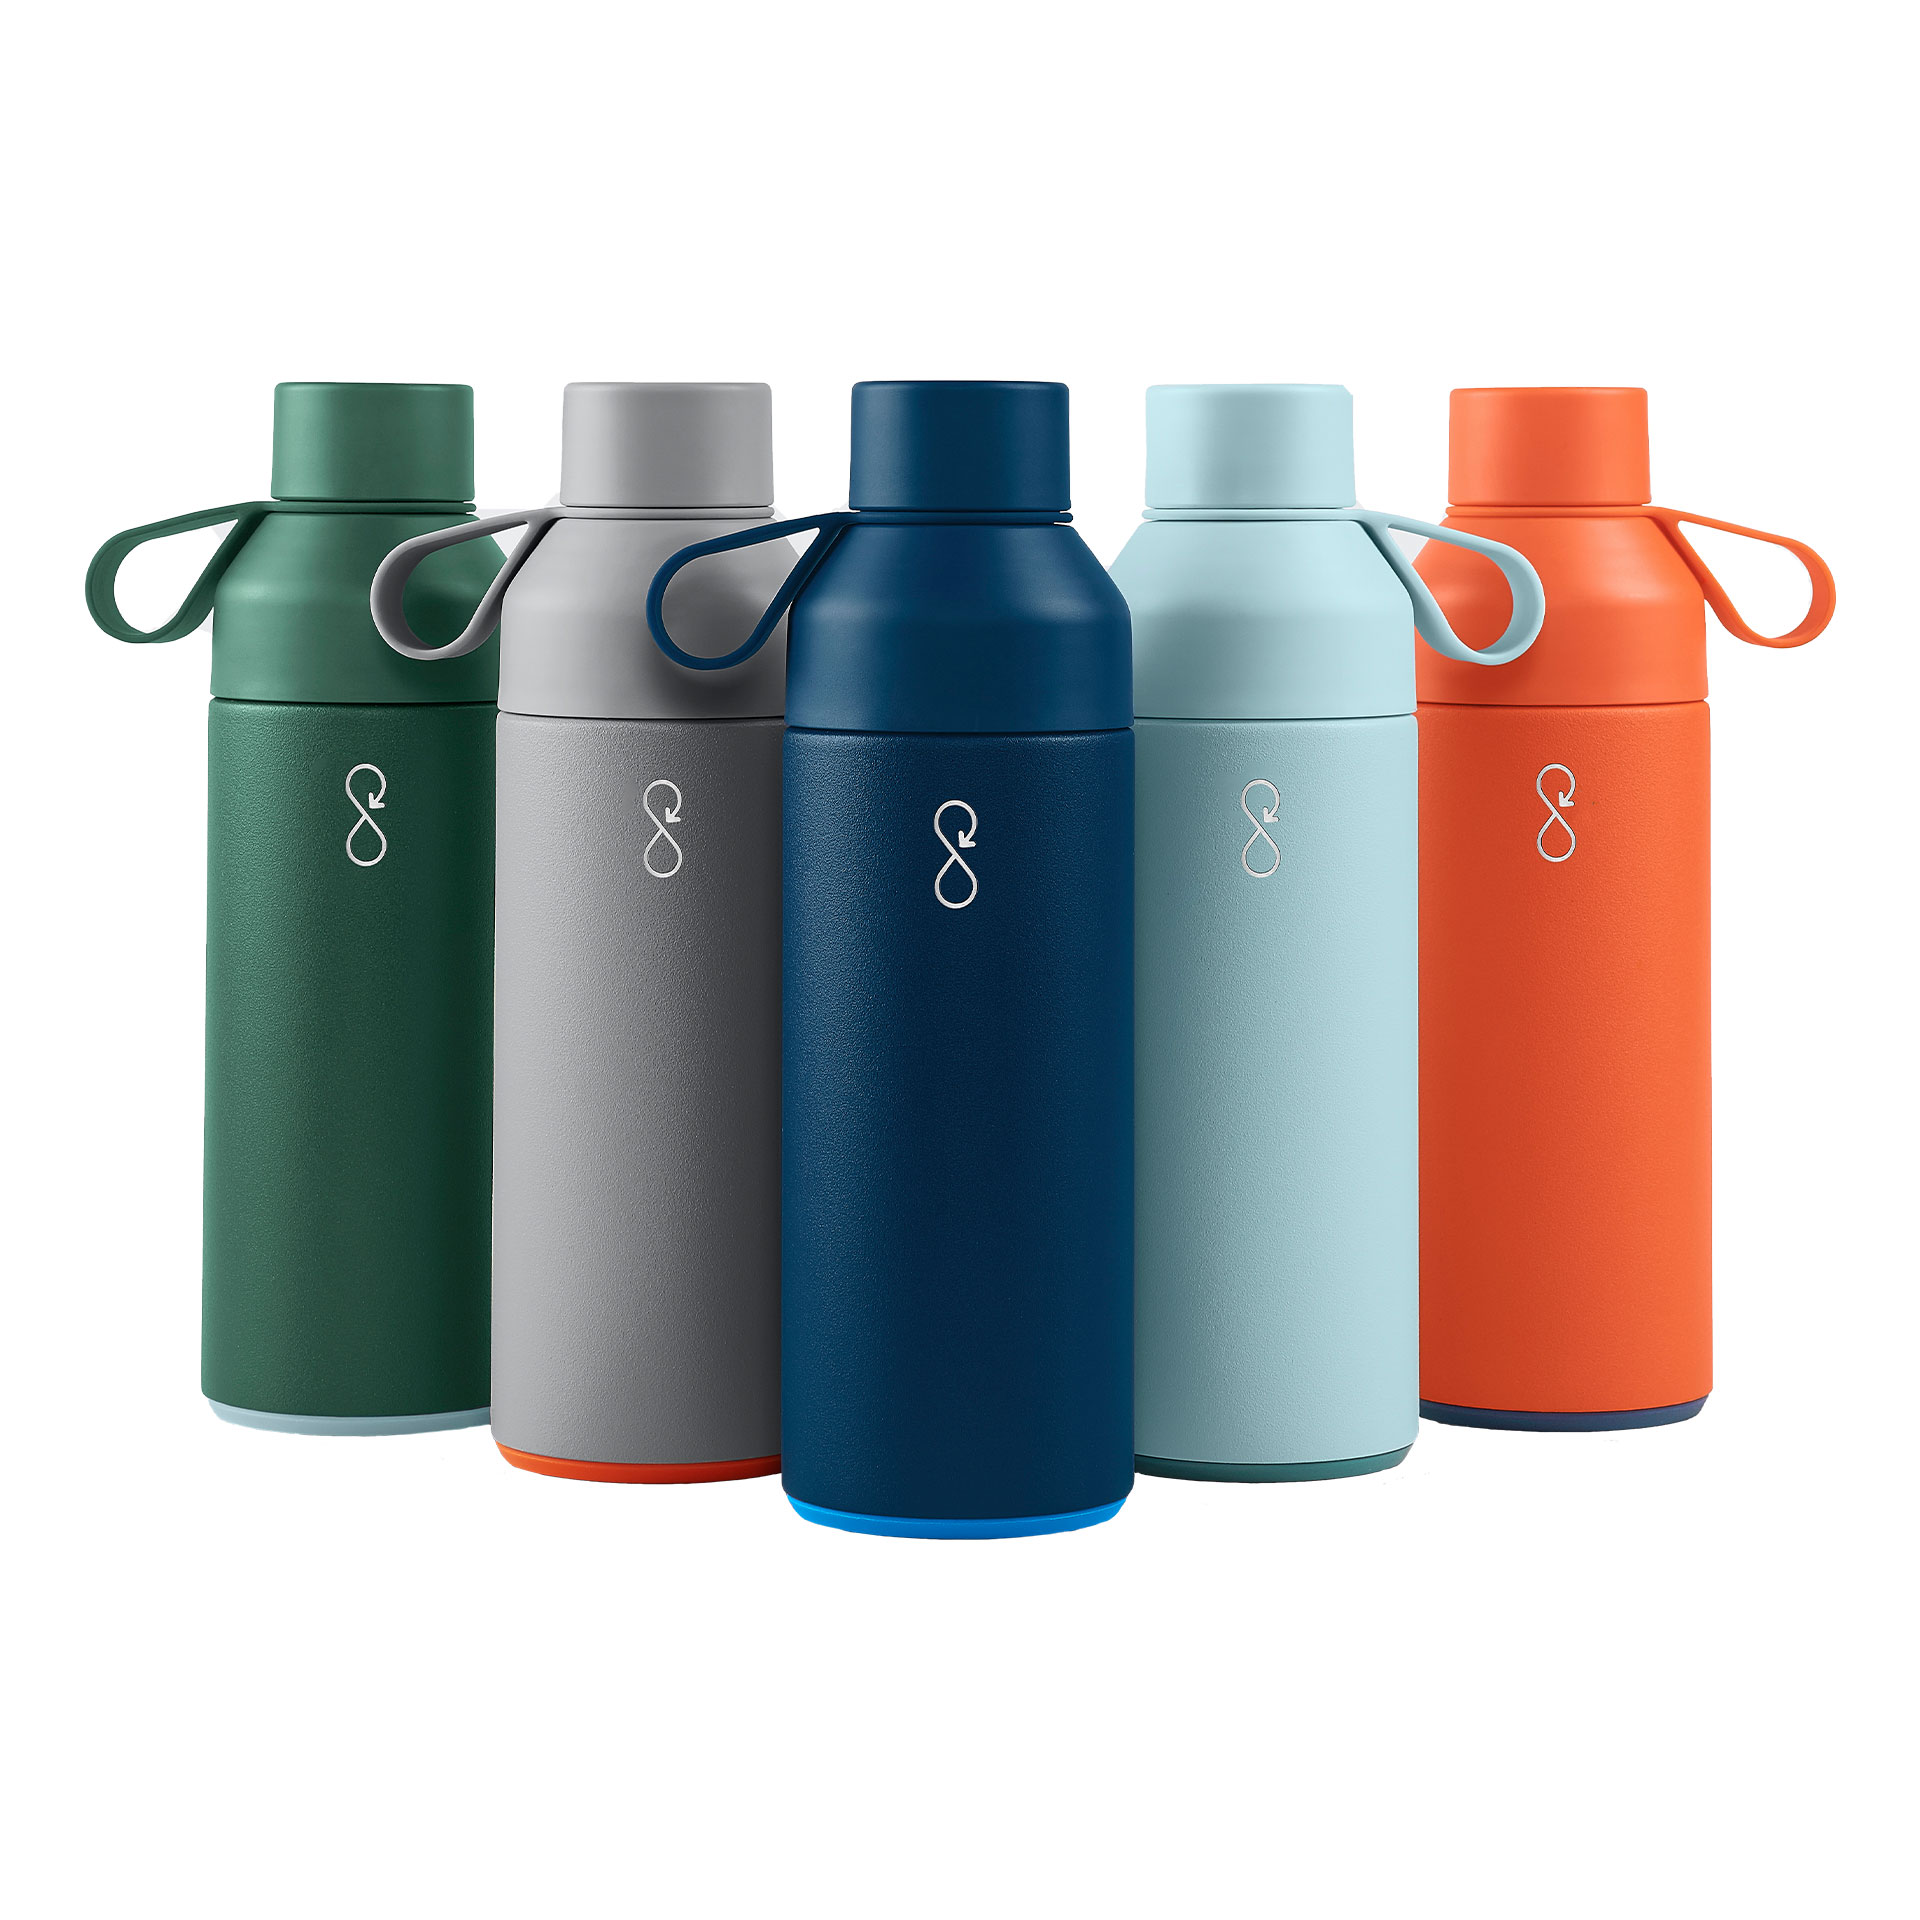 Die Ocean Bottle besteht aus recyceltem Kunststoff und Edelstahl. Jede Flasche finanziert die Sammlung von 11